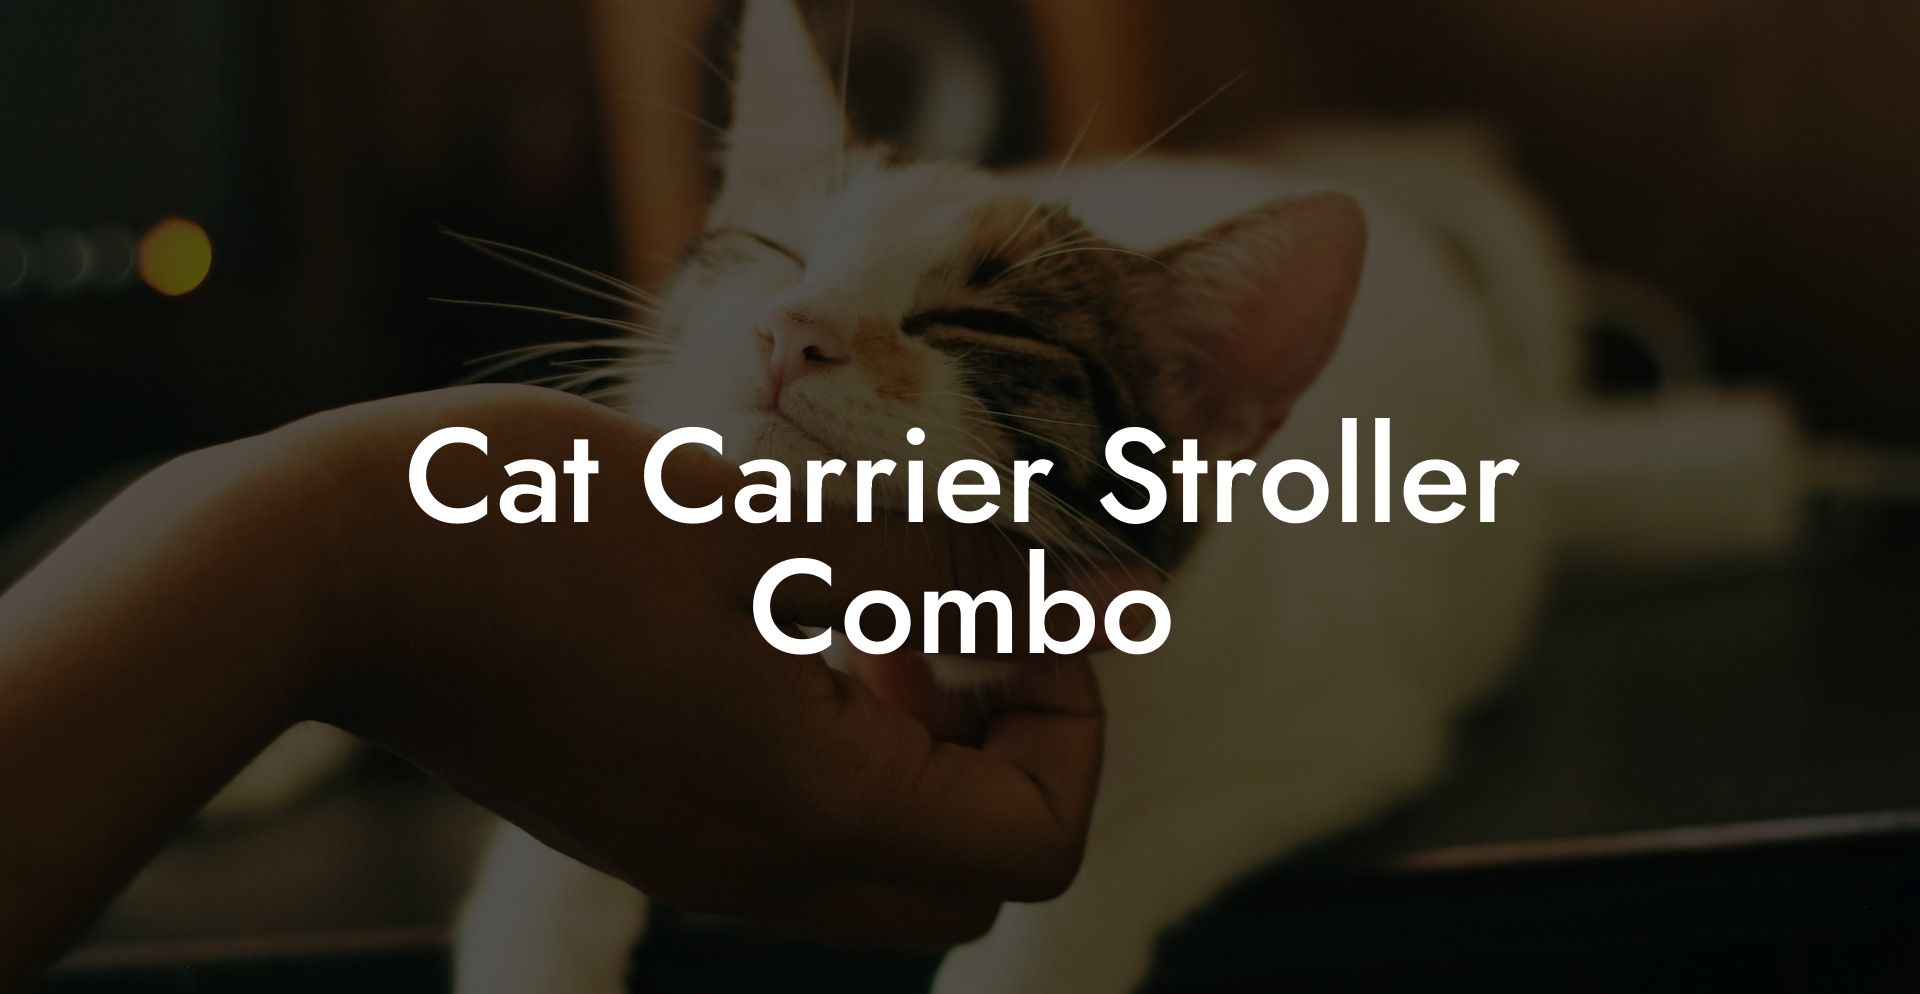 Cat Carrier Stroller Combo